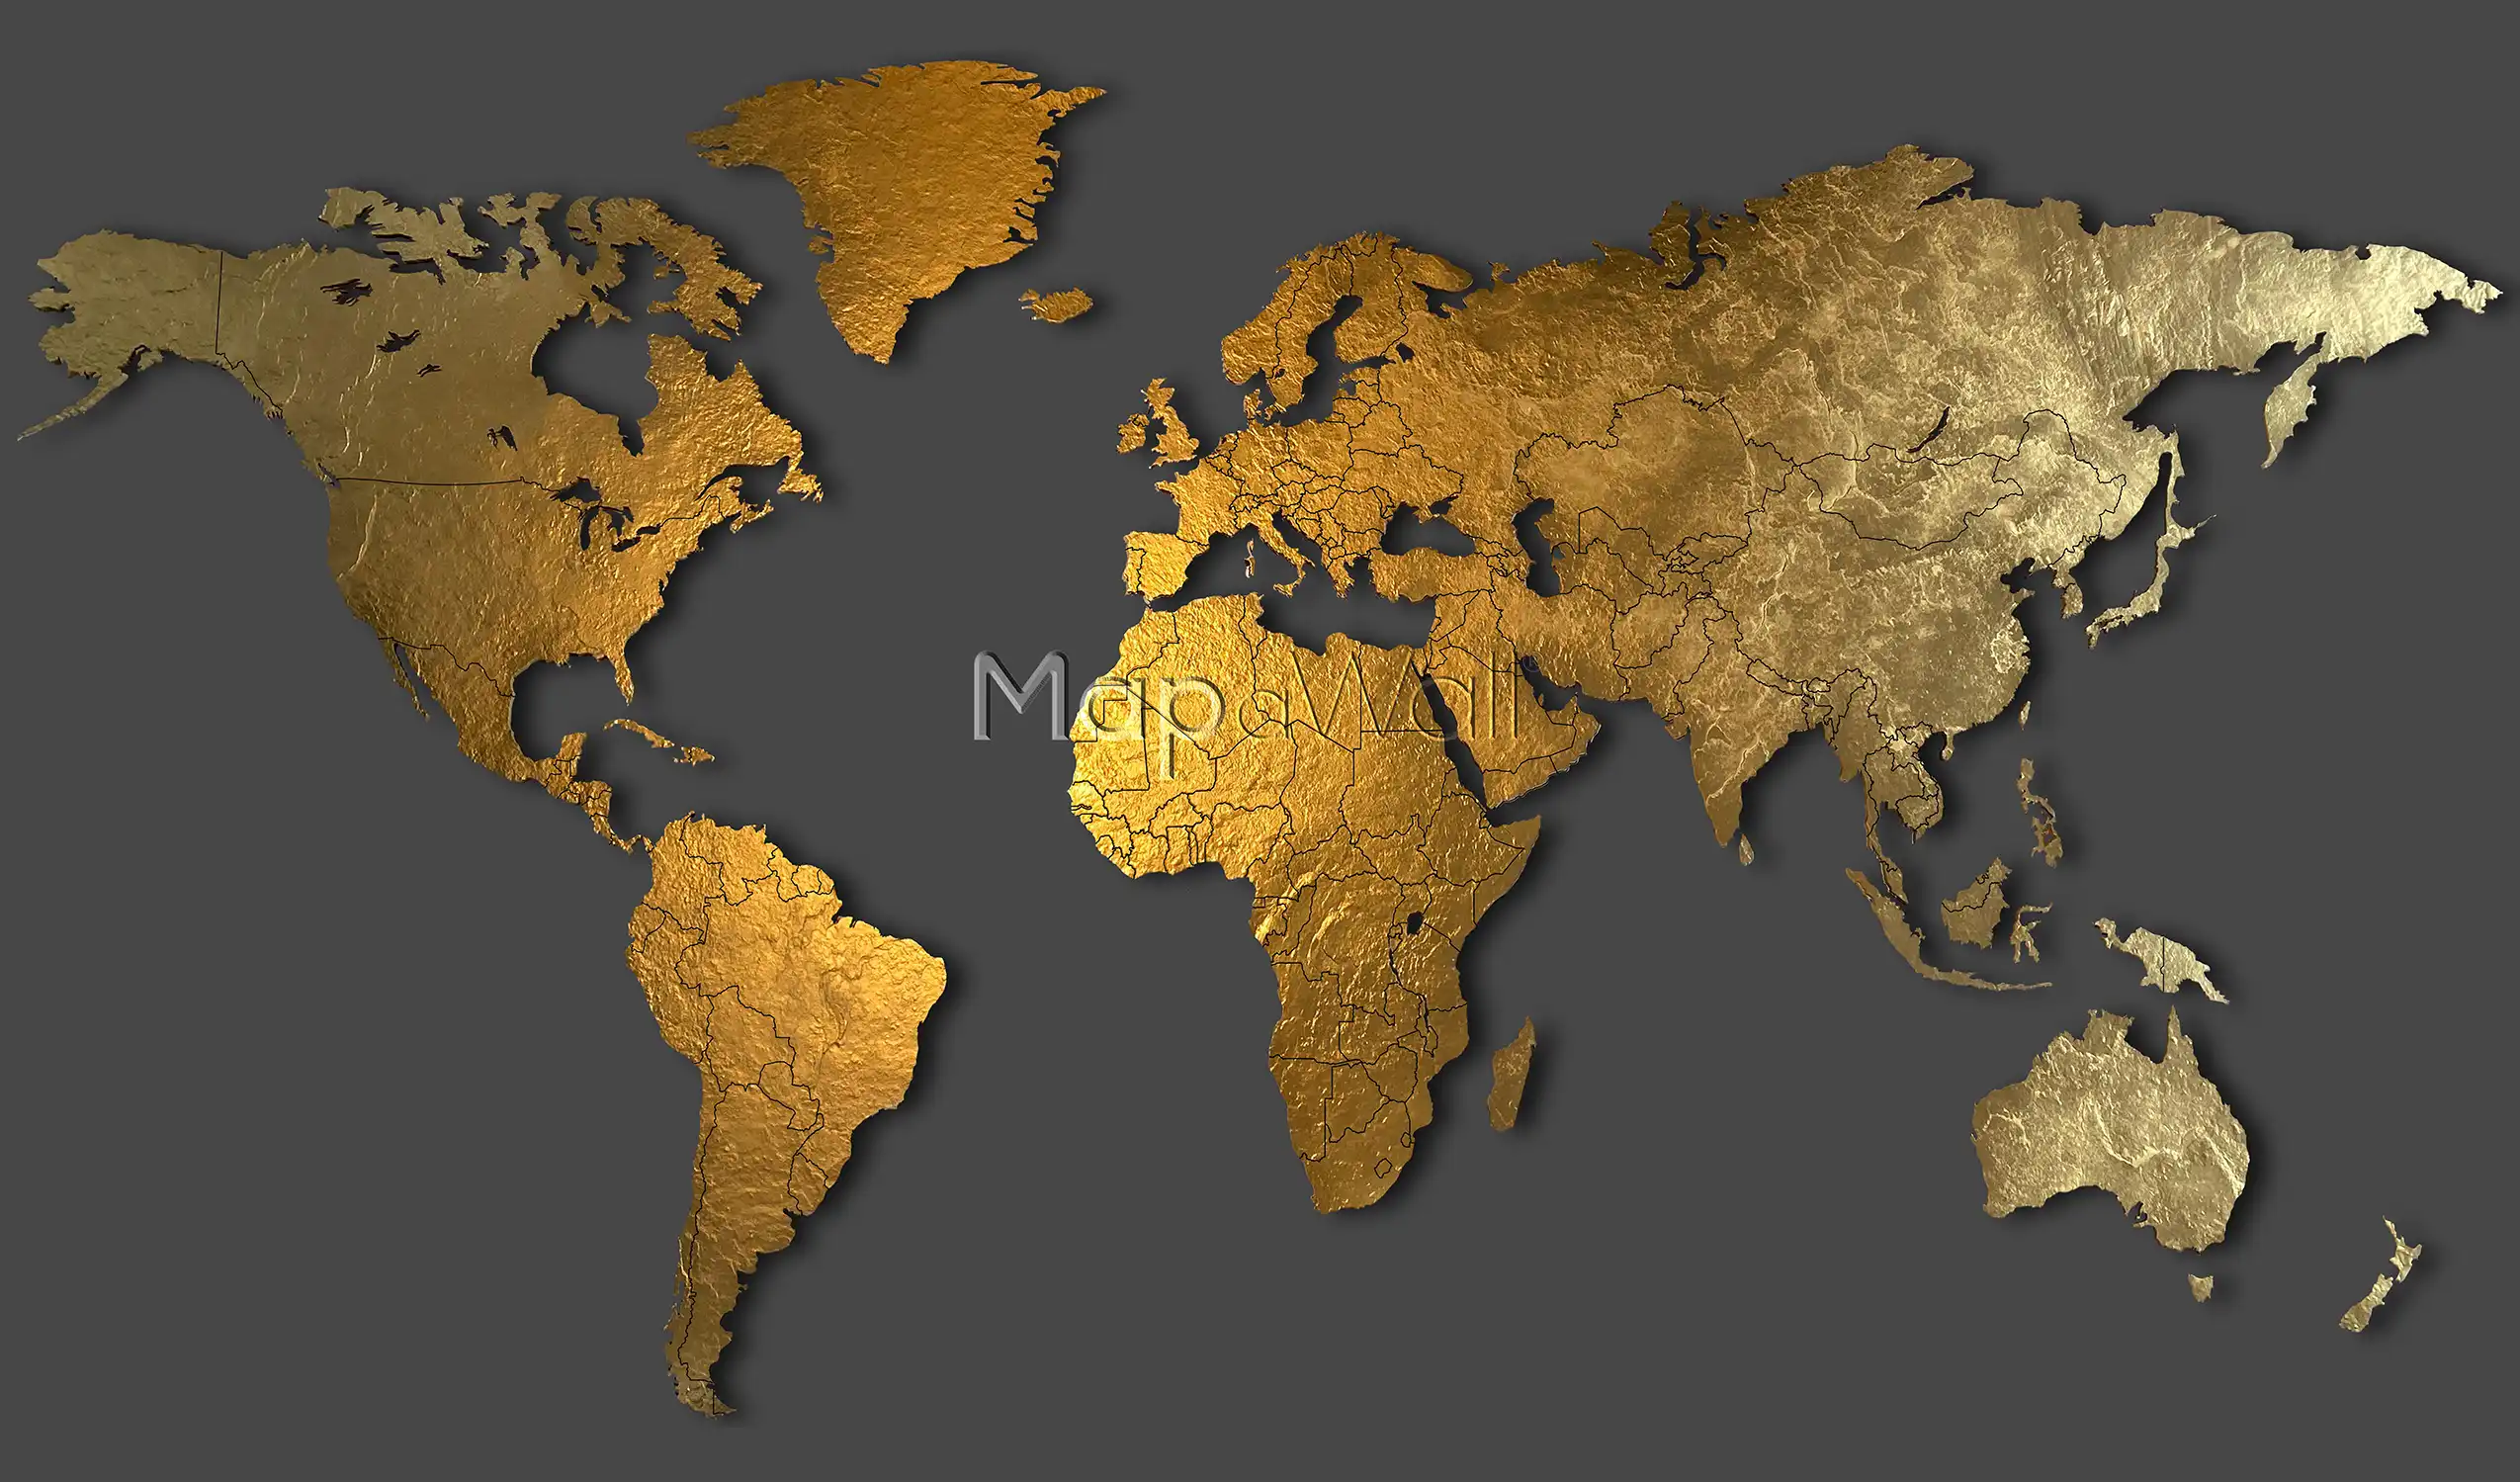 World map gold on dark background